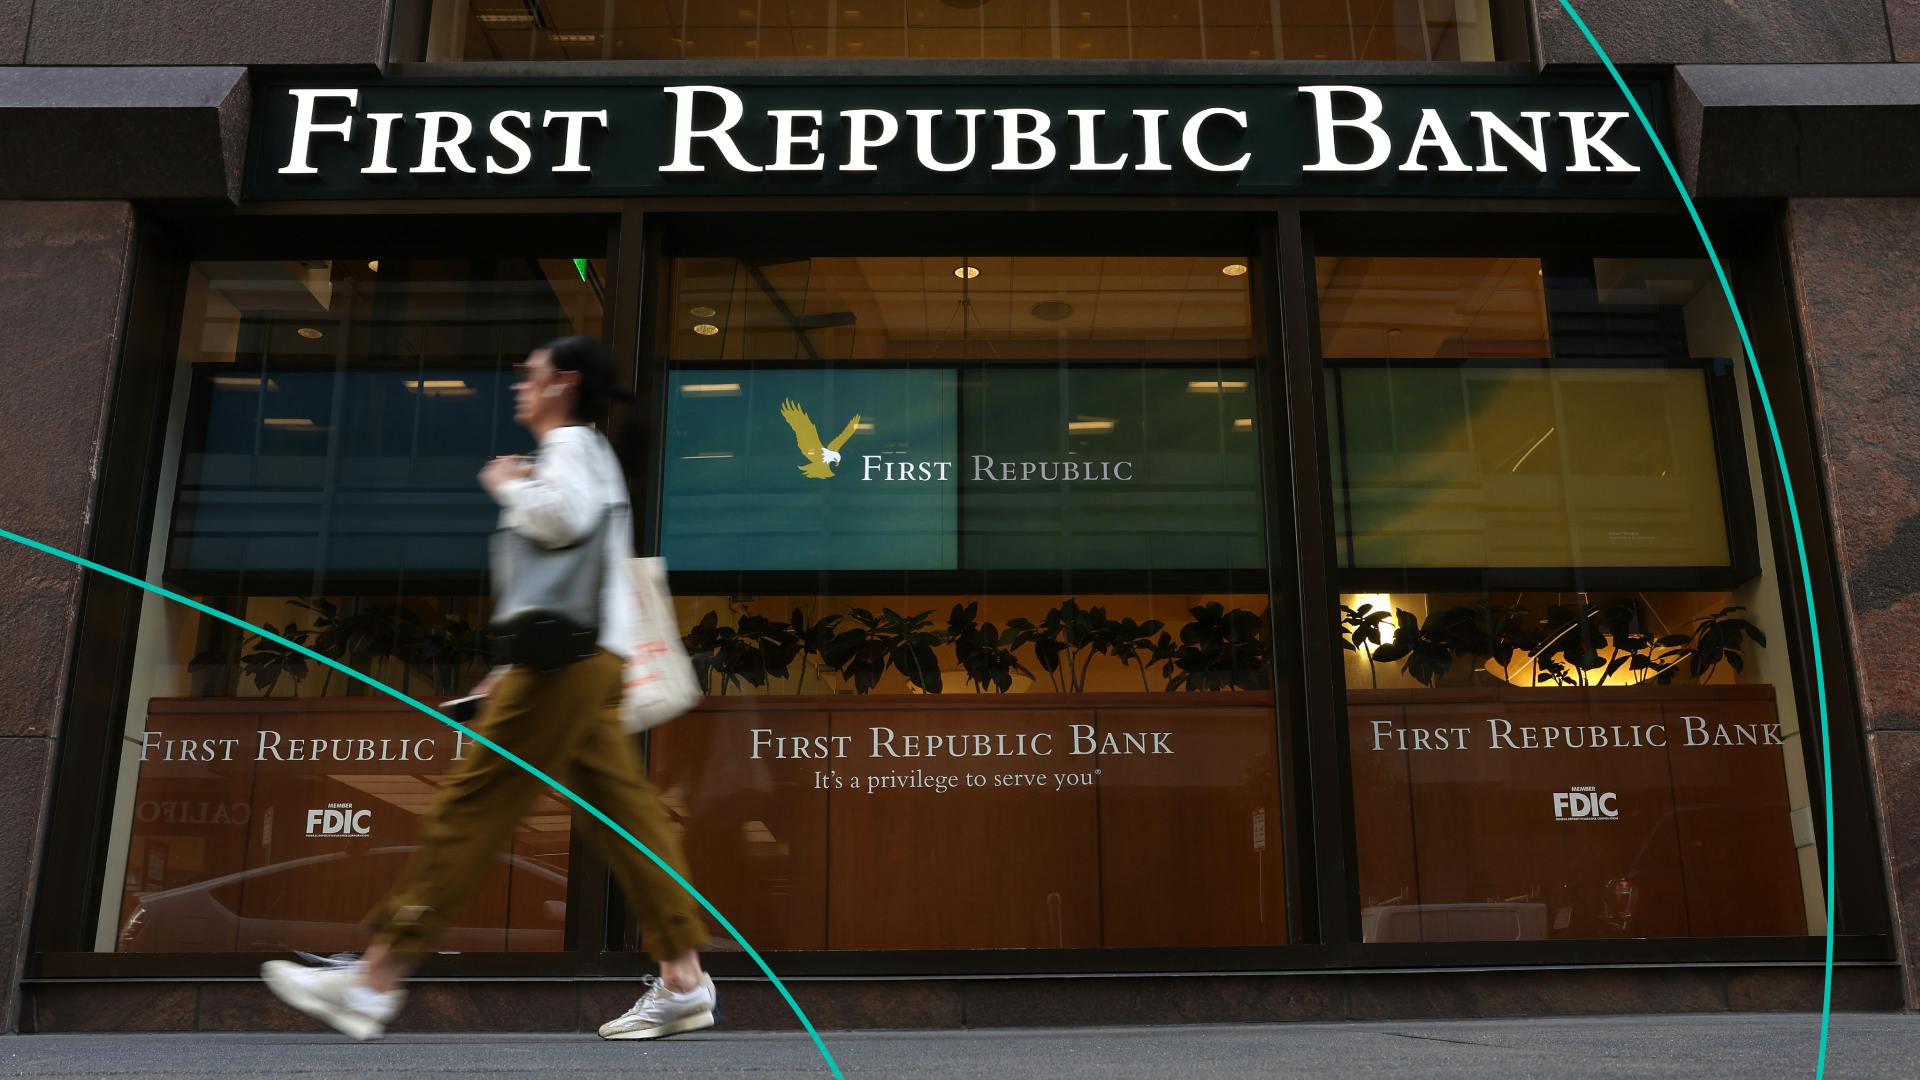 A pedestrian walks by a First Republic bank 